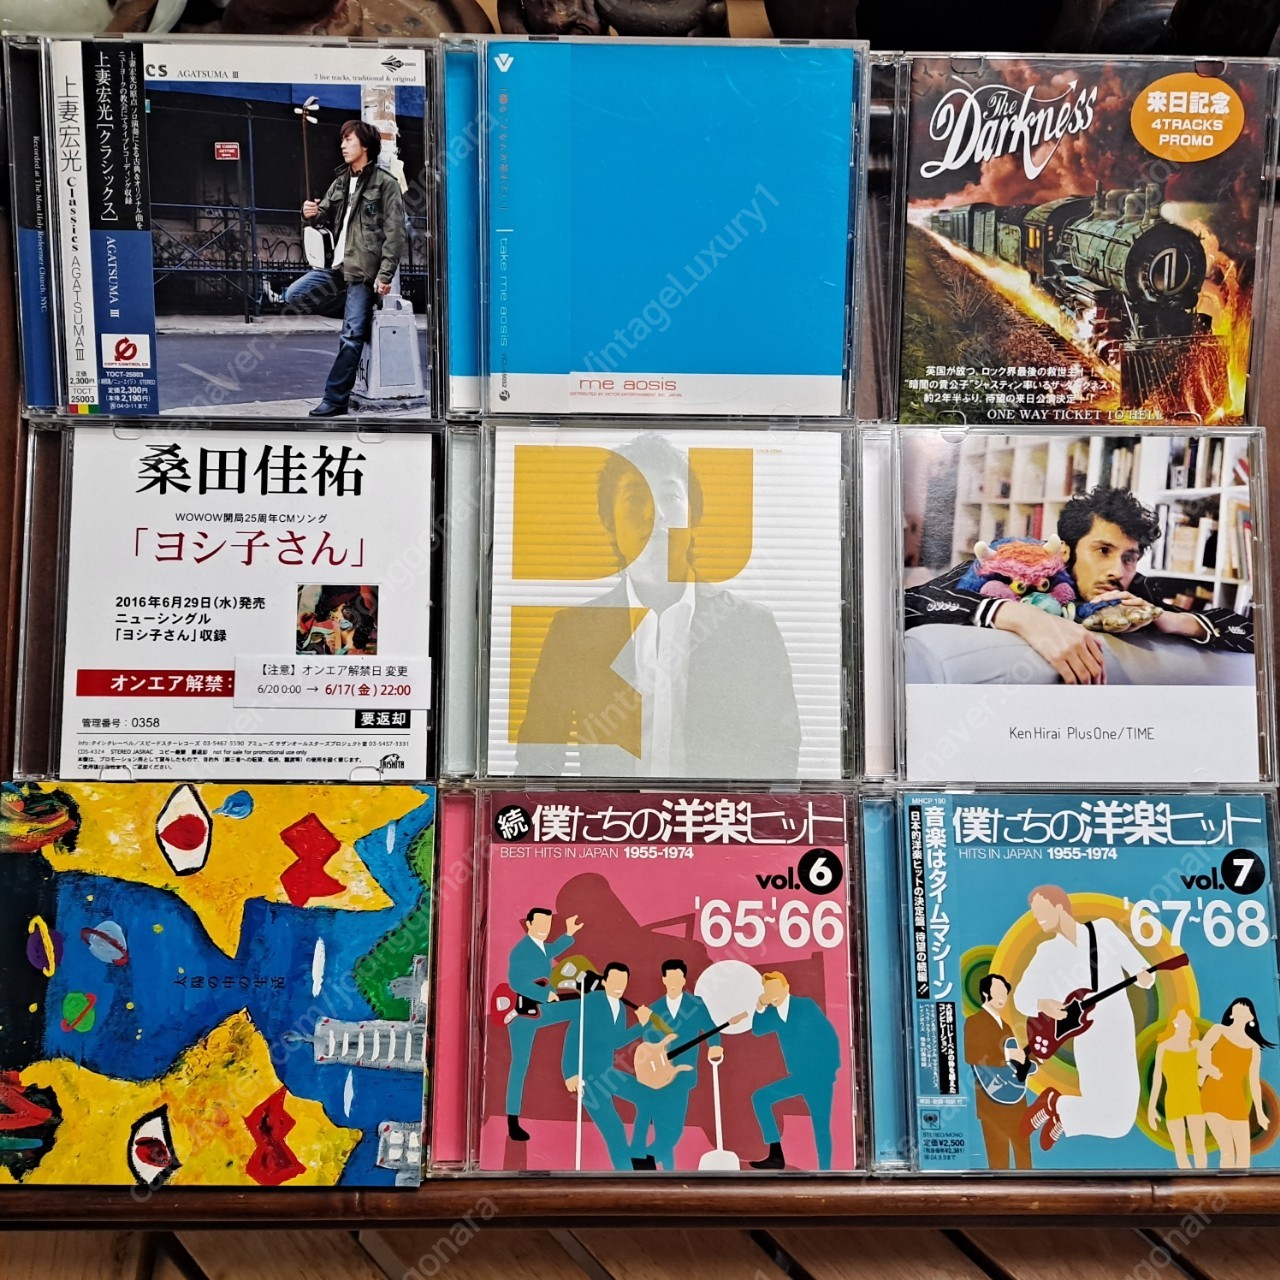 일본 시티팝, 재즈 밴드등 장르혼합 민트급 CD음반 183매와 미니싱글85매 일괄